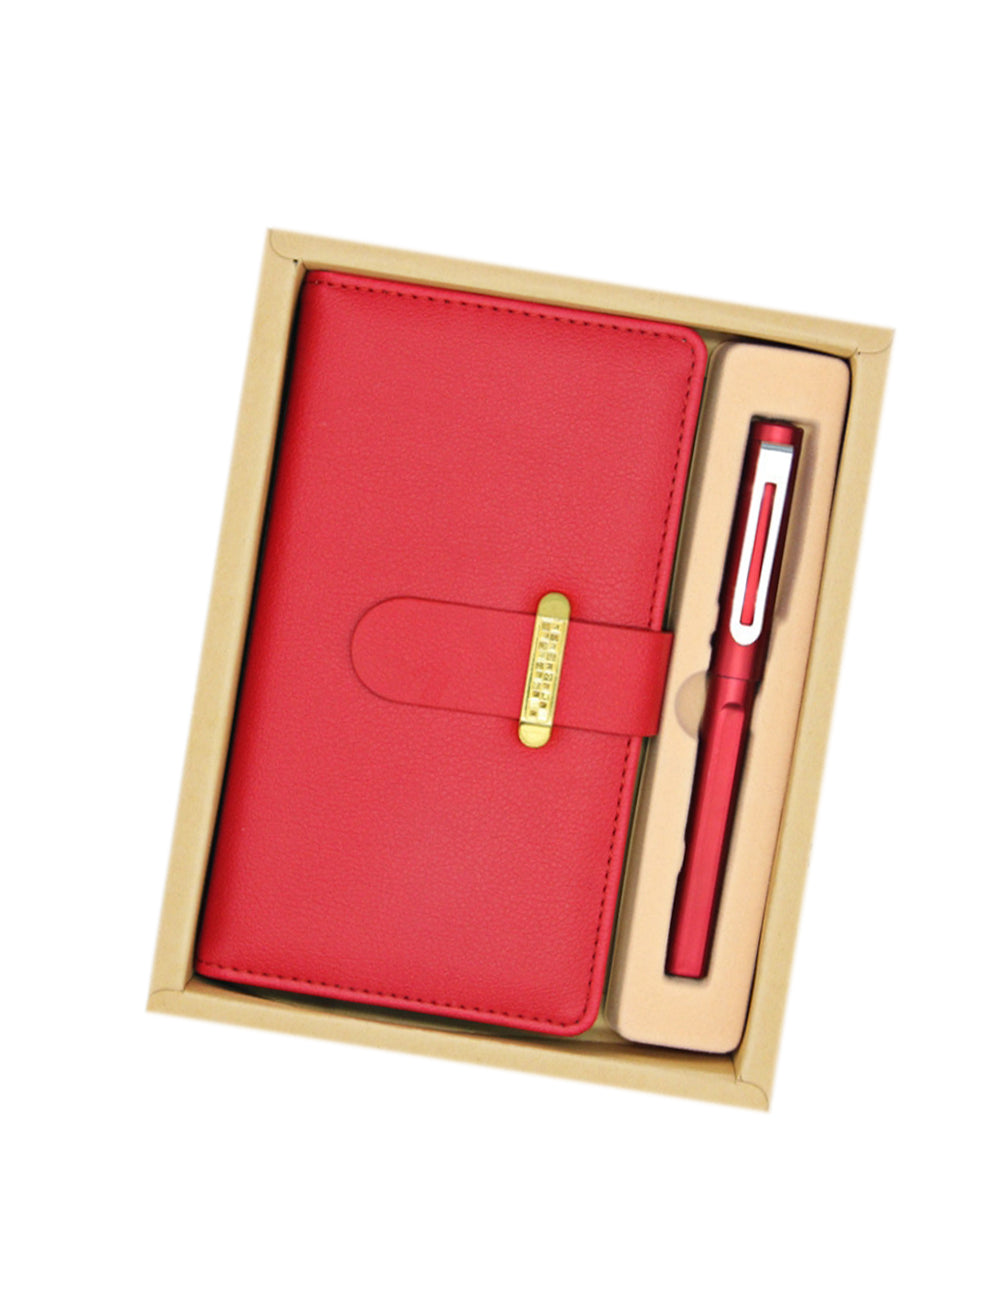 【客製禮品】A6商務筆記本禮盒(兩件套)